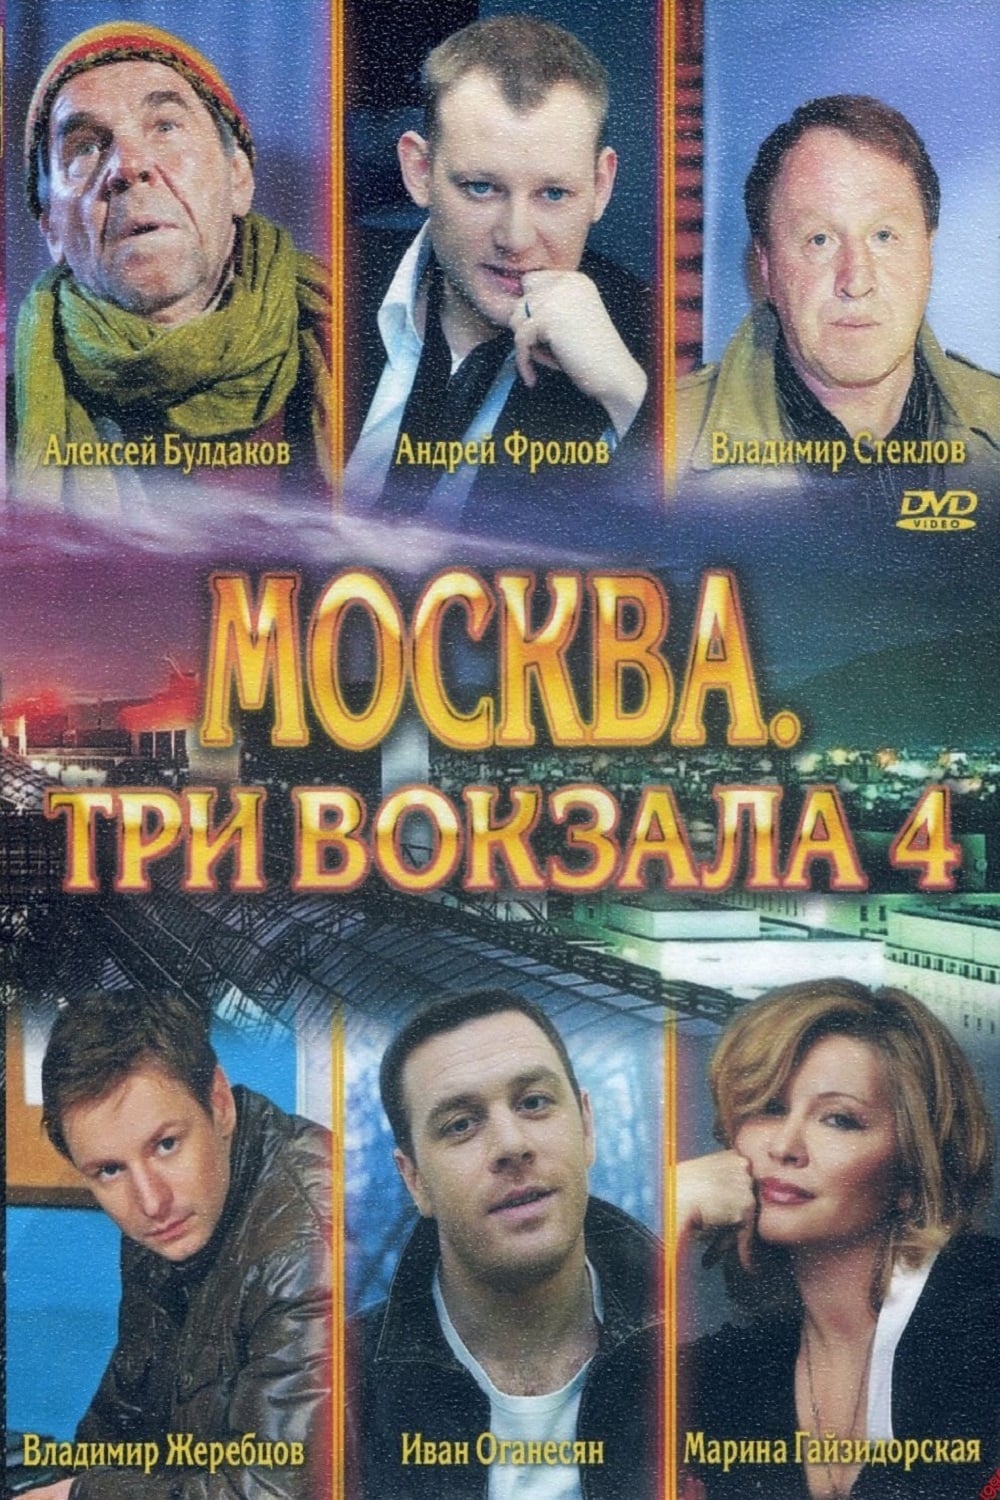 Сериал москва три вокзала актеры и роли фото все сезоны